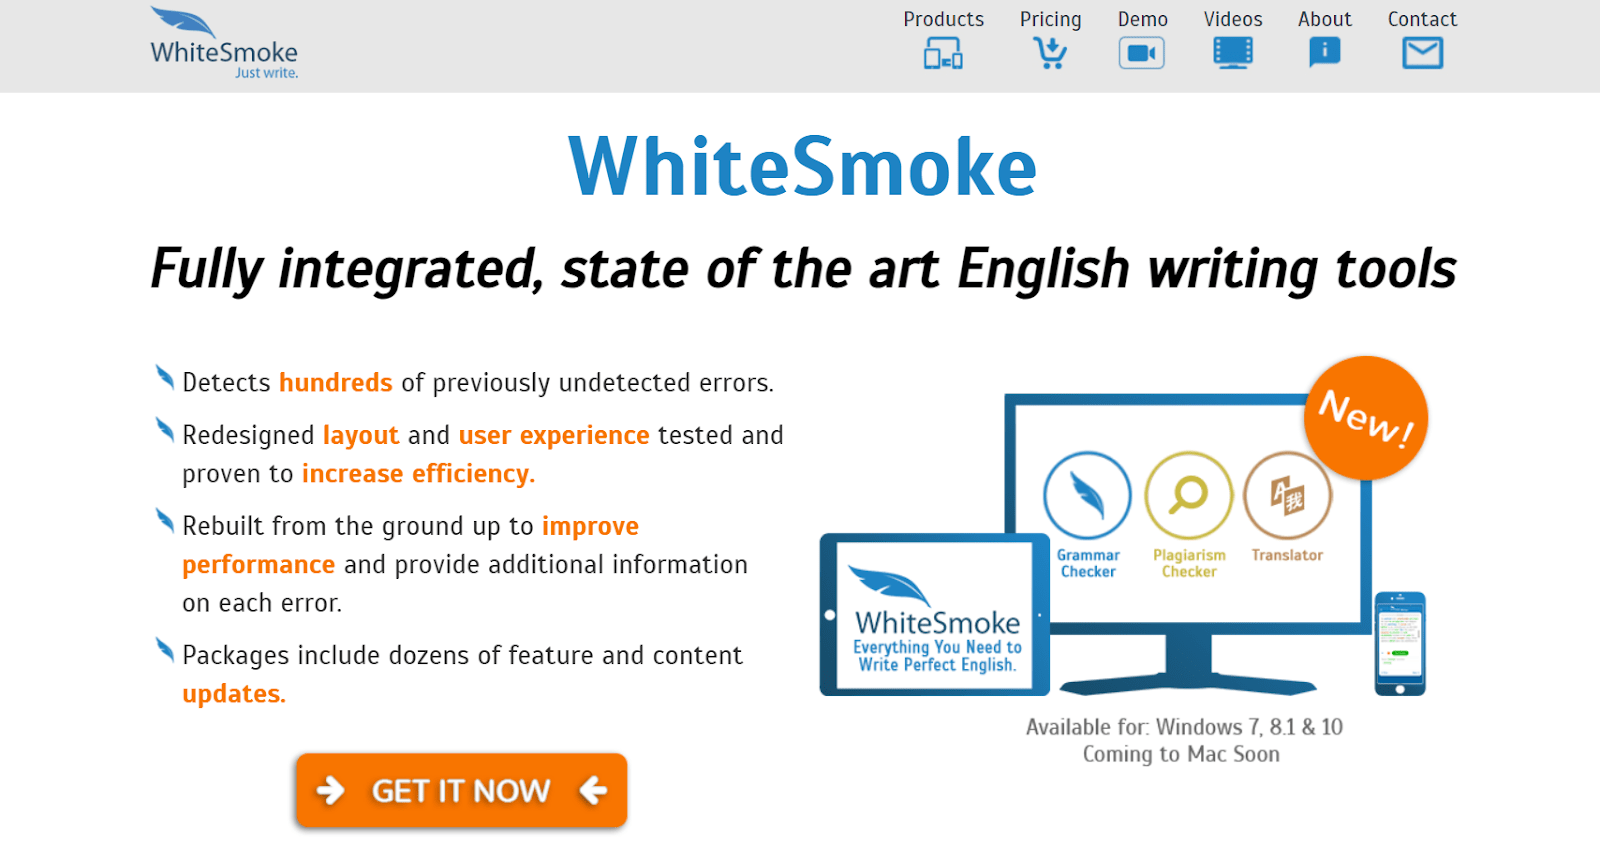 whitesmoke website - english grammar checker software